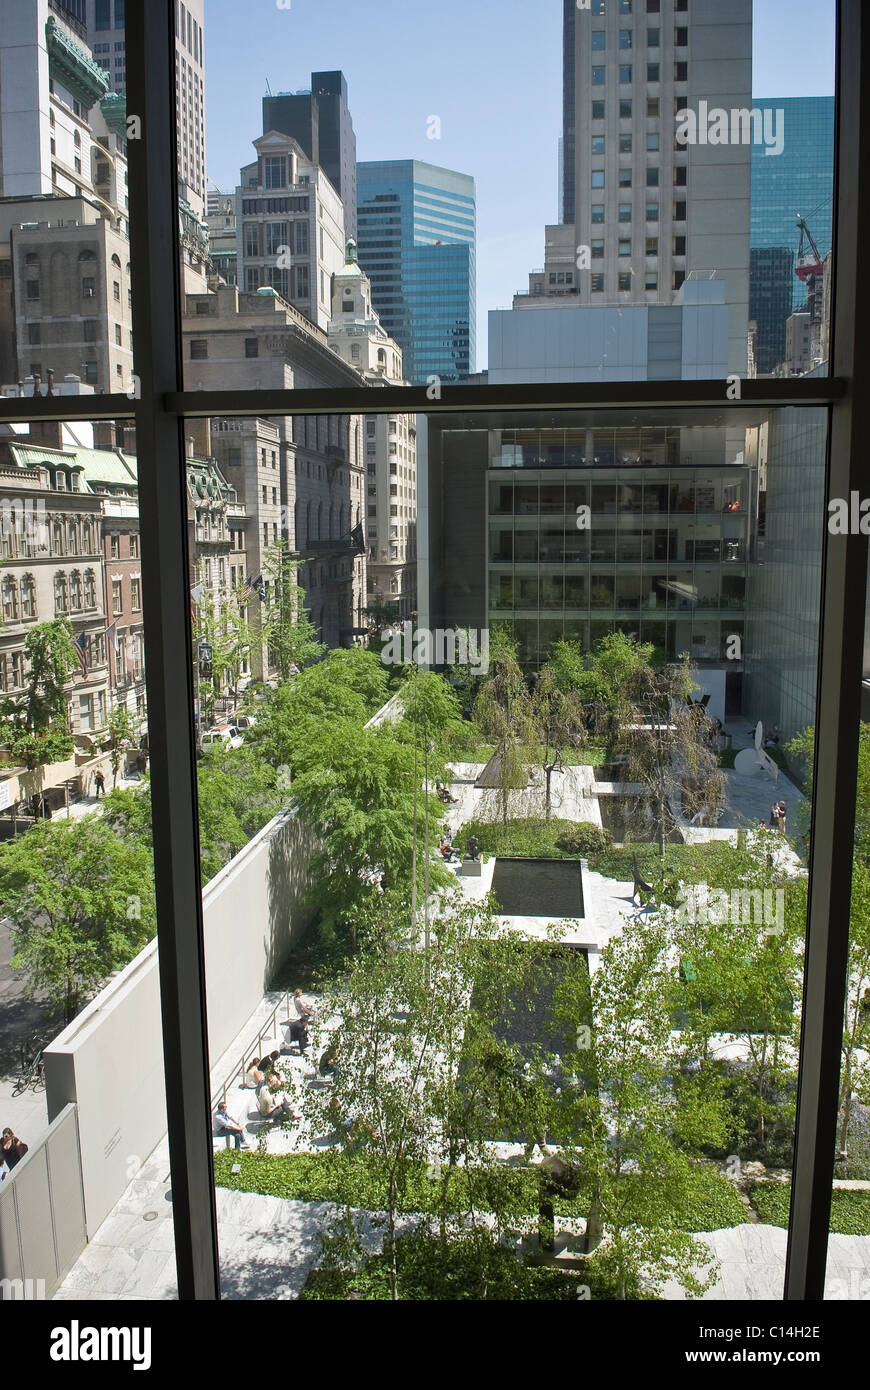 Courtyard garden at the Museum of Modern Art, Manhattan, New York City, USA Stock Photo